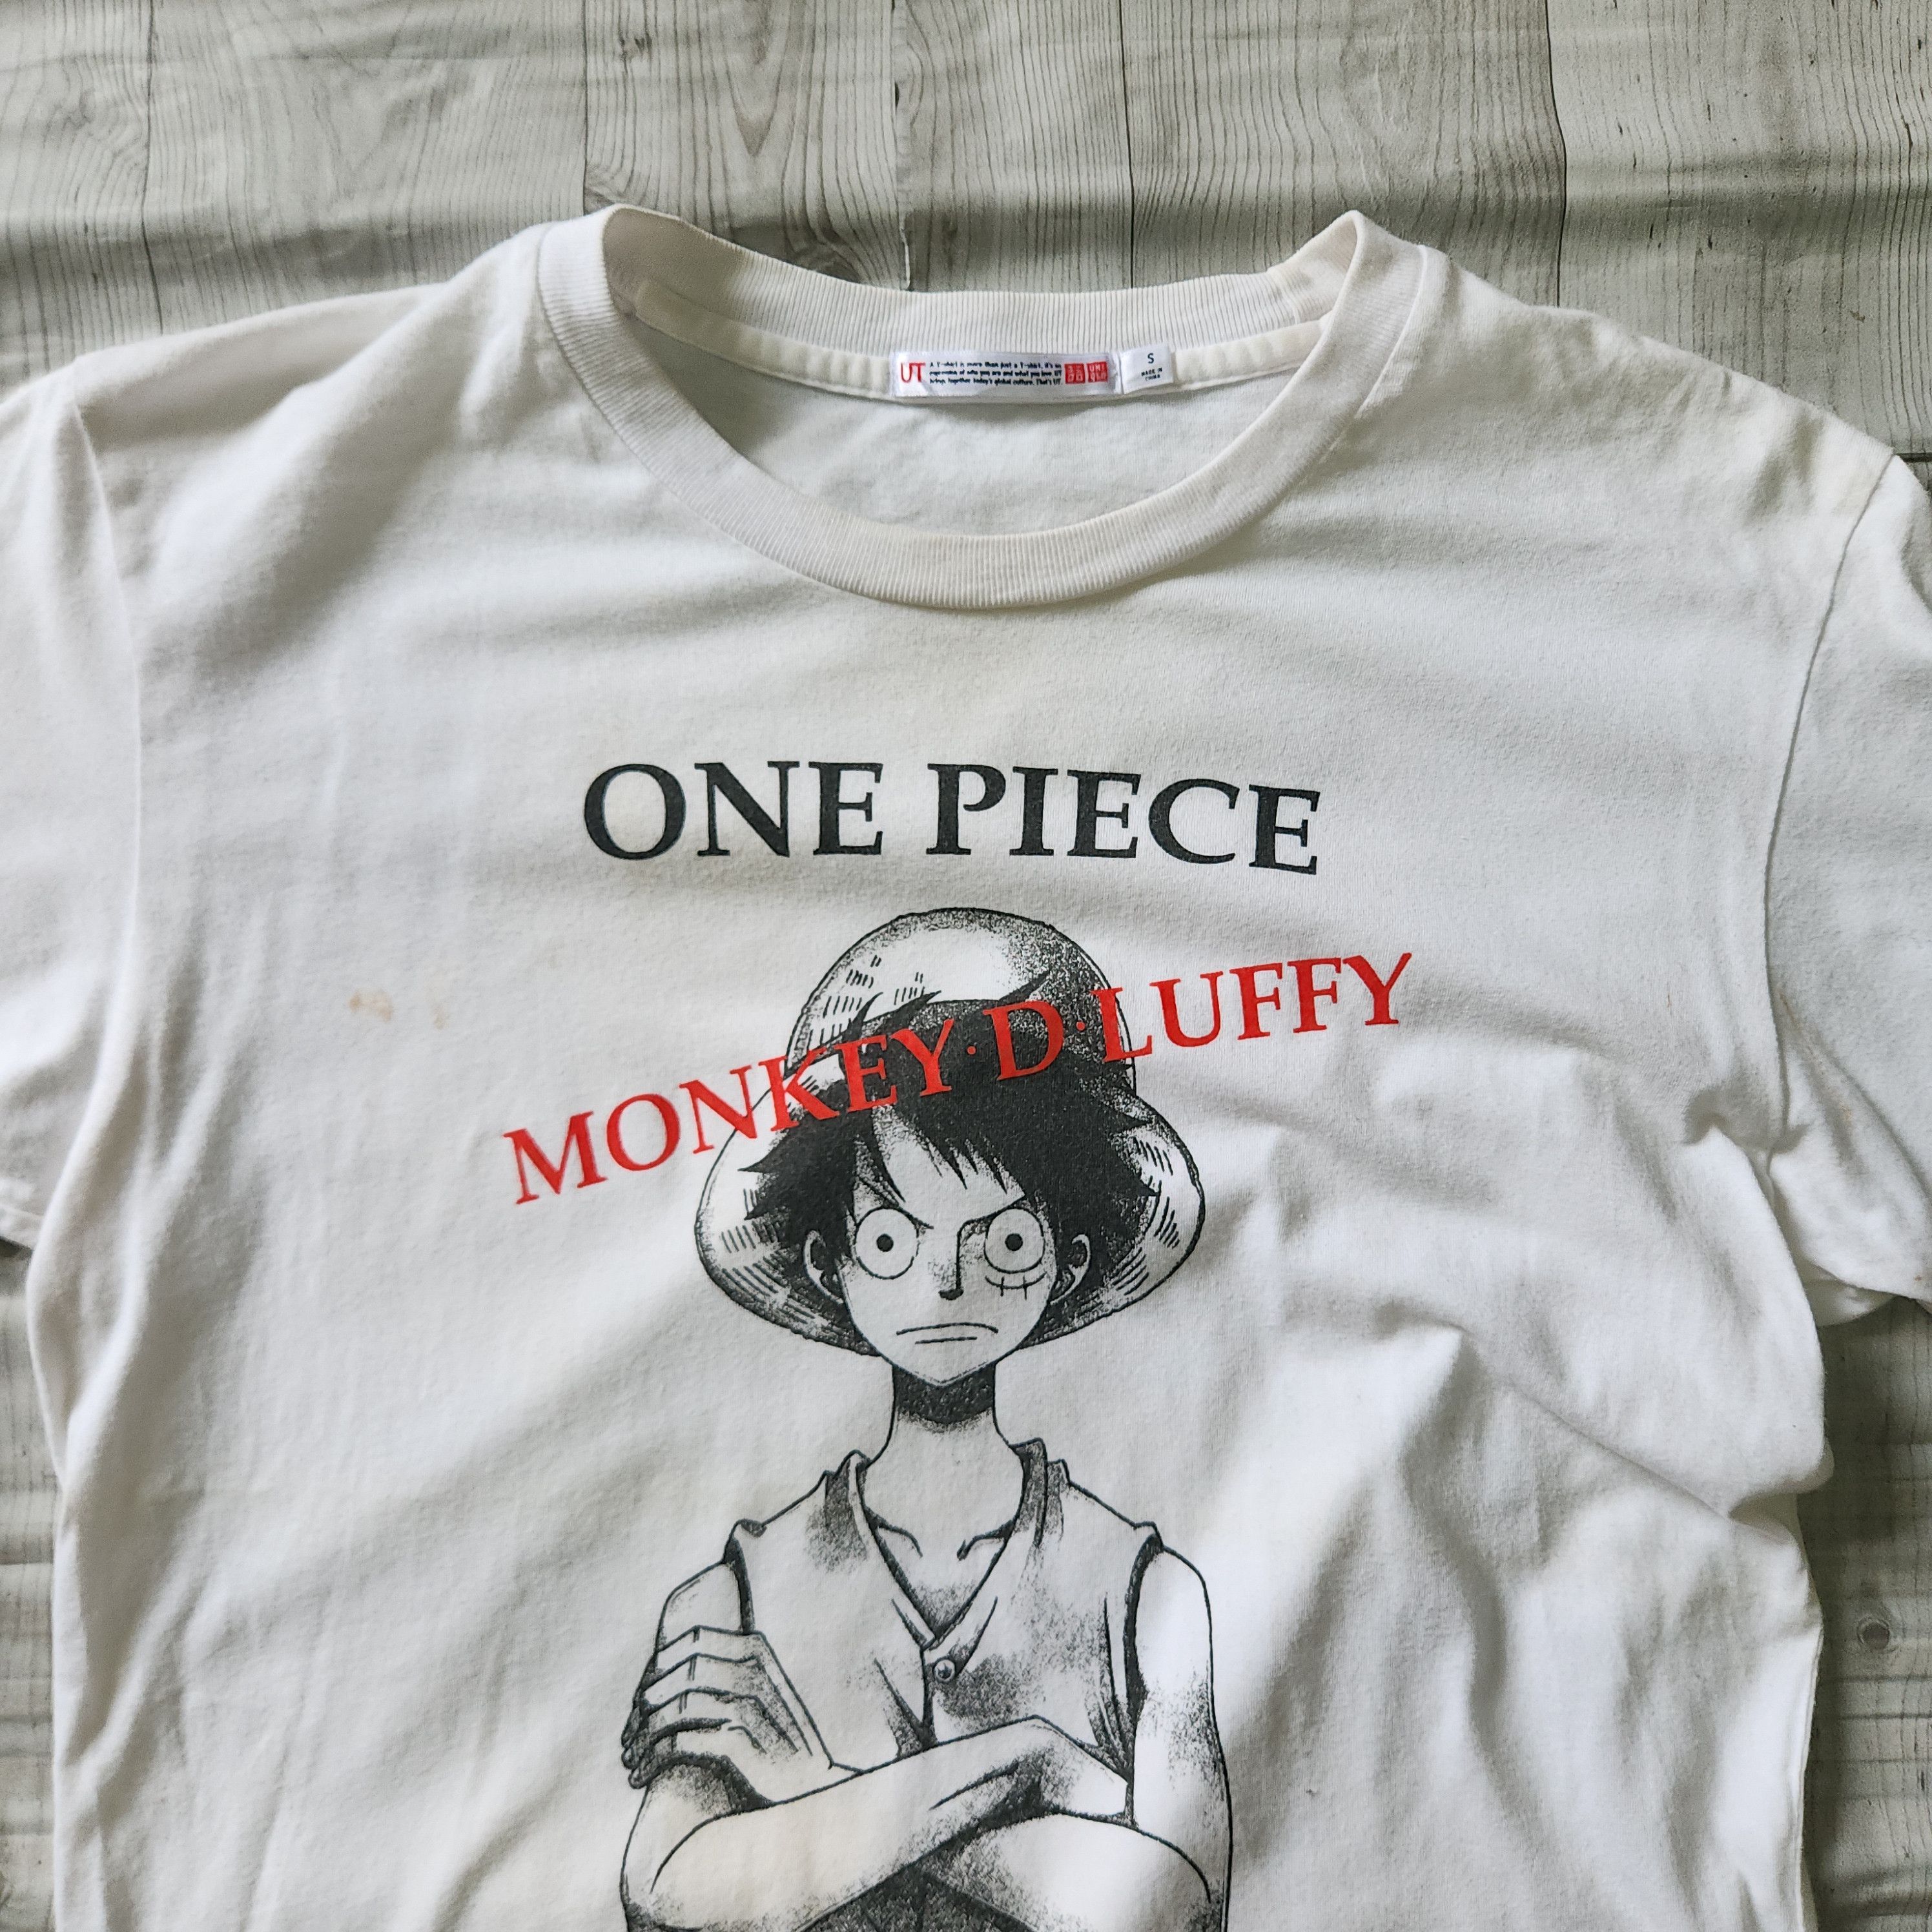 Uniqlo - One Piece Monkey D Luffy Big Printed TShirt - 16